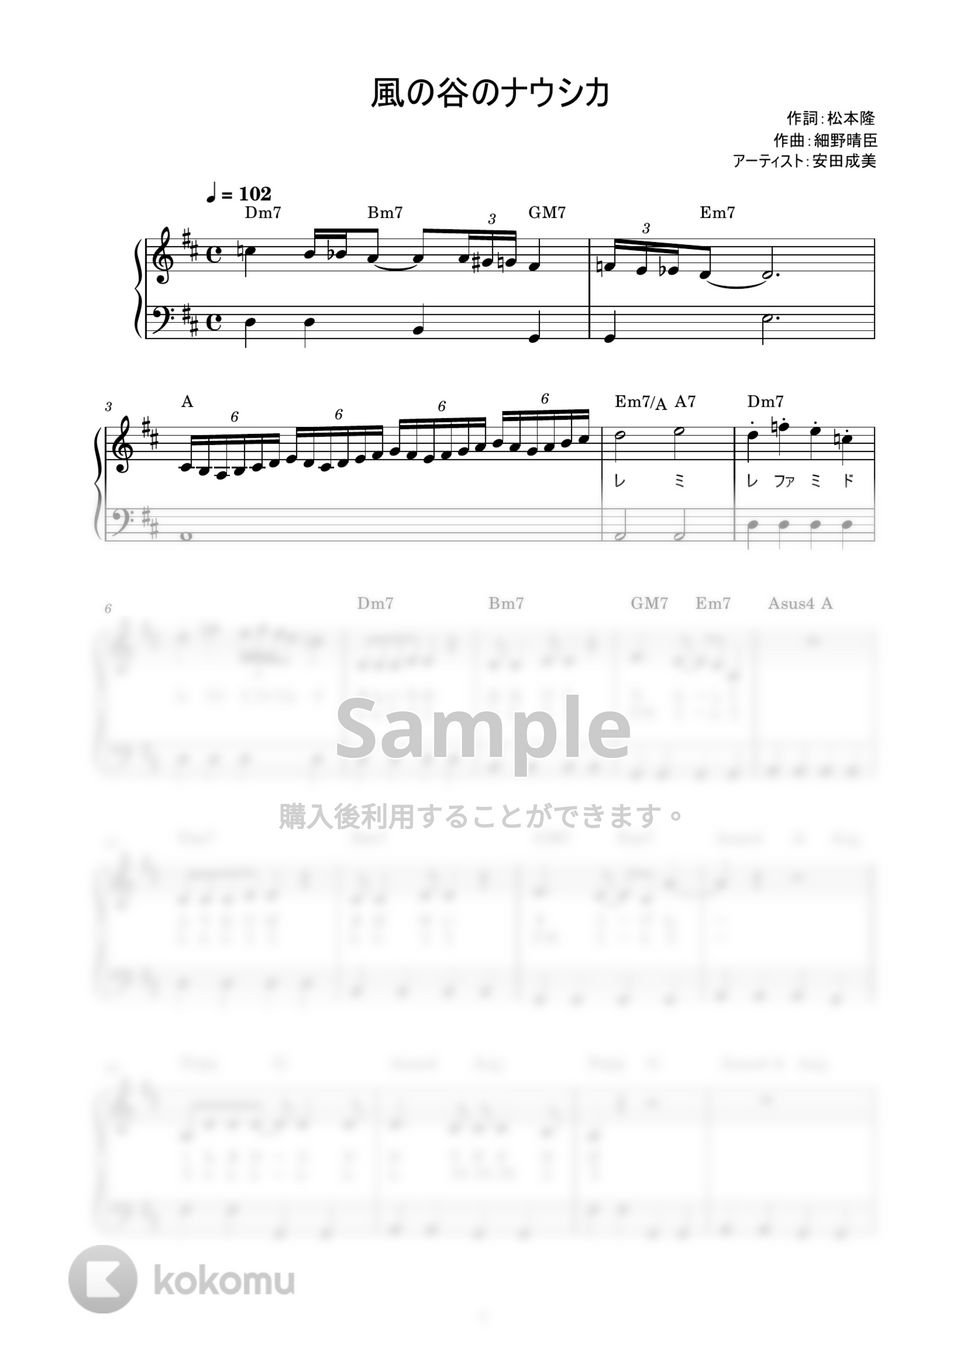 安田成美 - 風の谷のナウシカ (かんたん / 歌詞付き / ドレミ付き / 初心者) by piano.tokyo